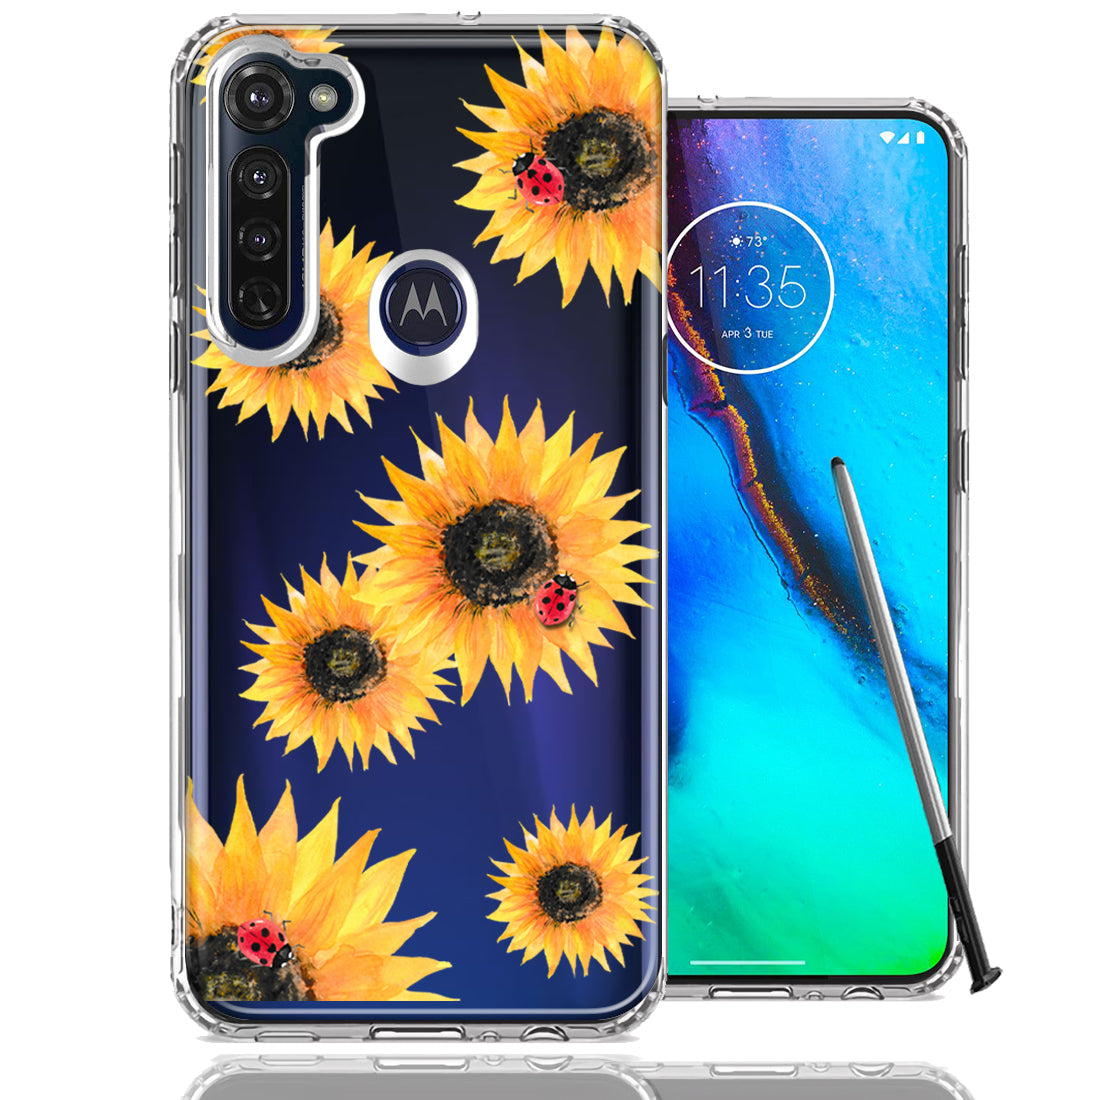 Kruipen surfen Respectvol For Motorola Moto G stylus Sunflower Ladybug Design Double Layer Phone –  CellCasesUSA